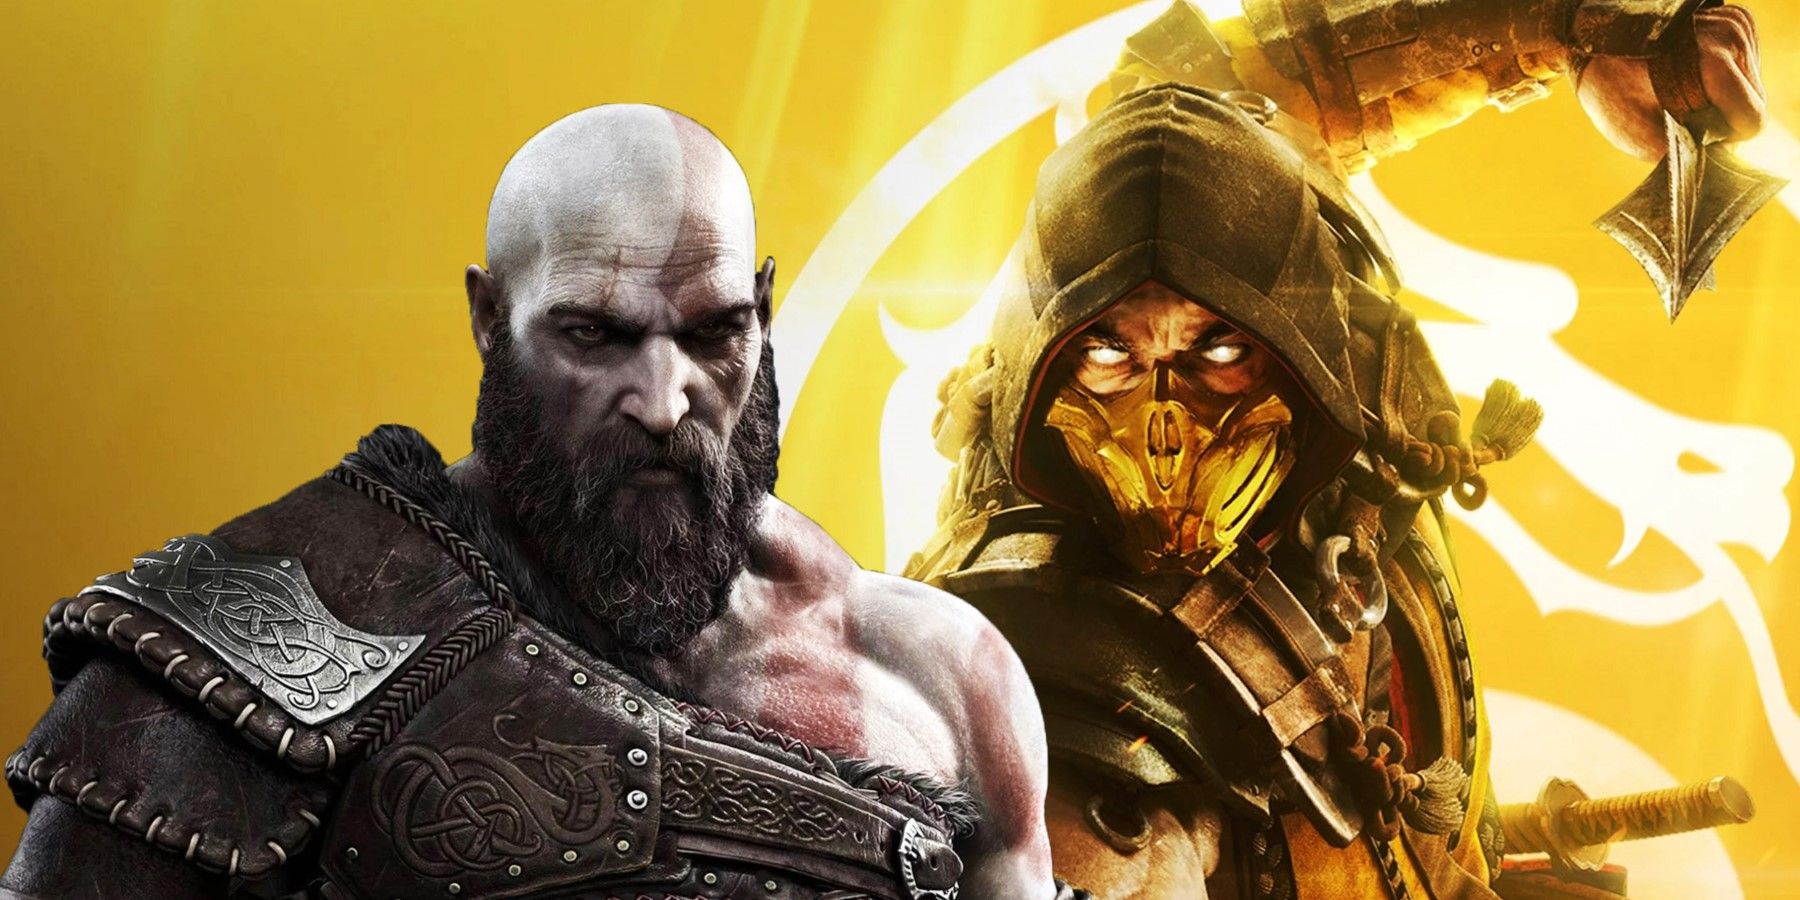 God of War's Kratos and Mortal Kombat 11's Scorpion